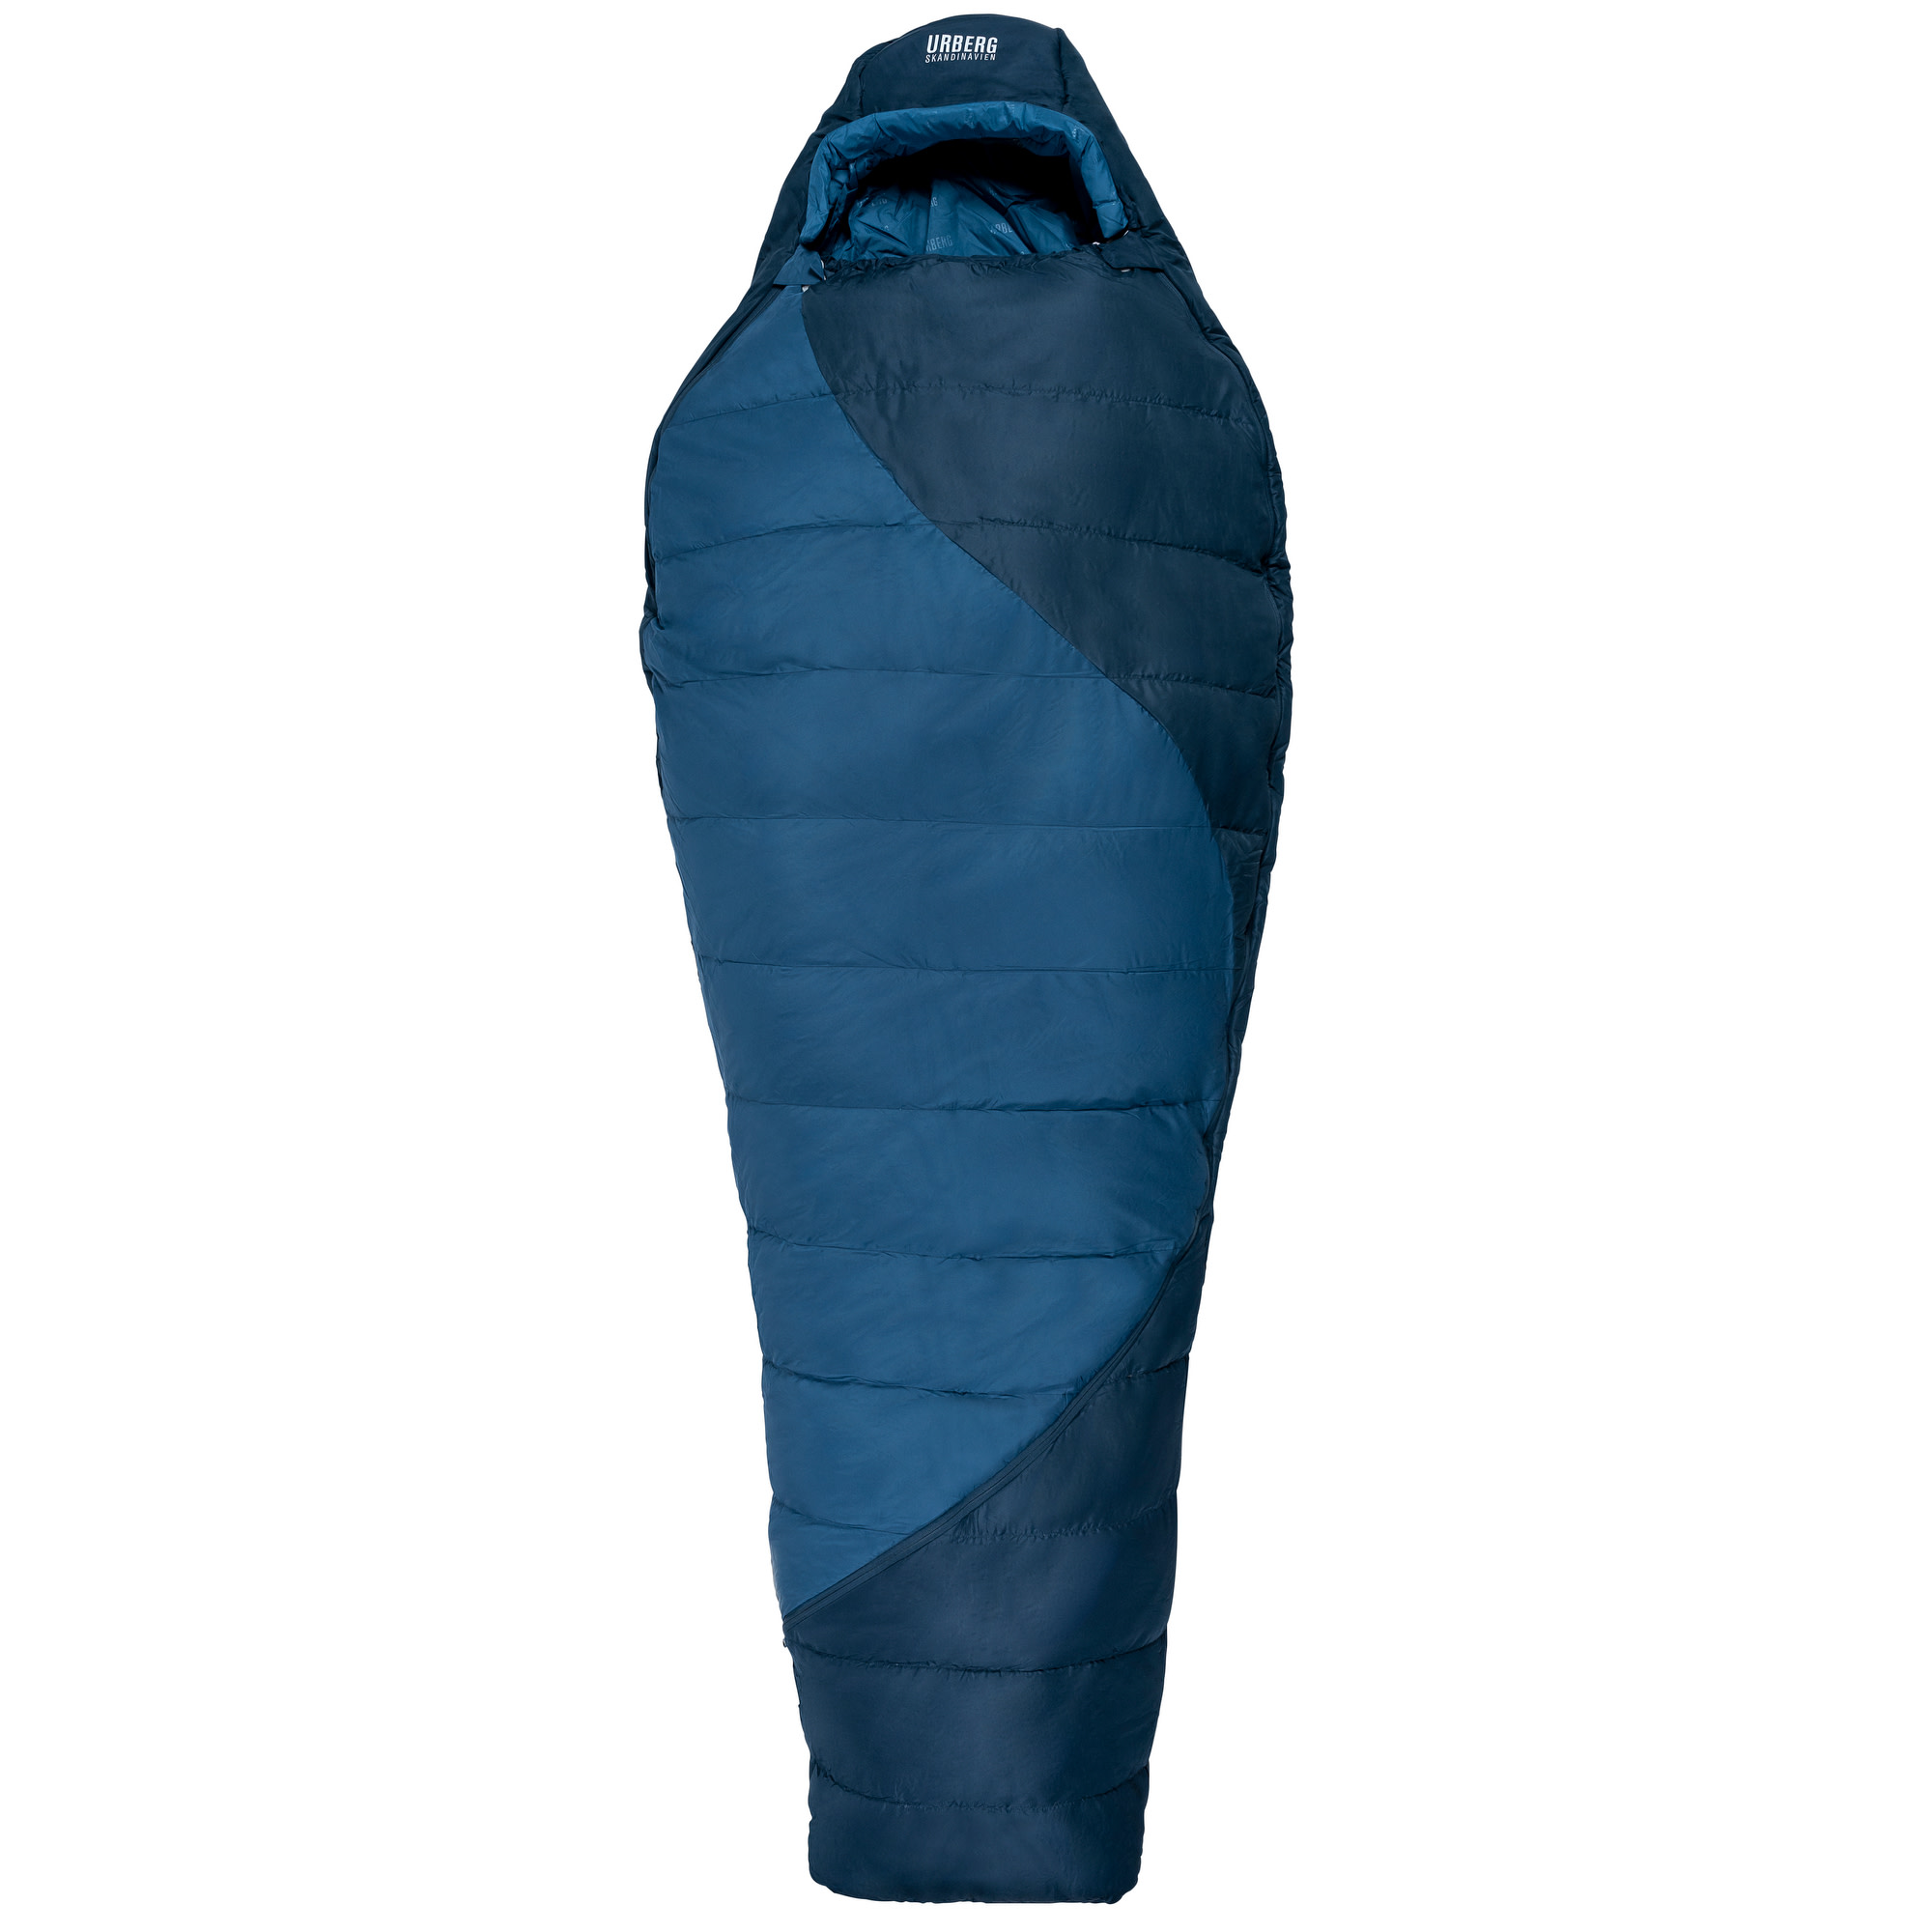 Urberg Ritsem Hybrid Sleepingbag 0°C Midnight Navy/Mallard Blue